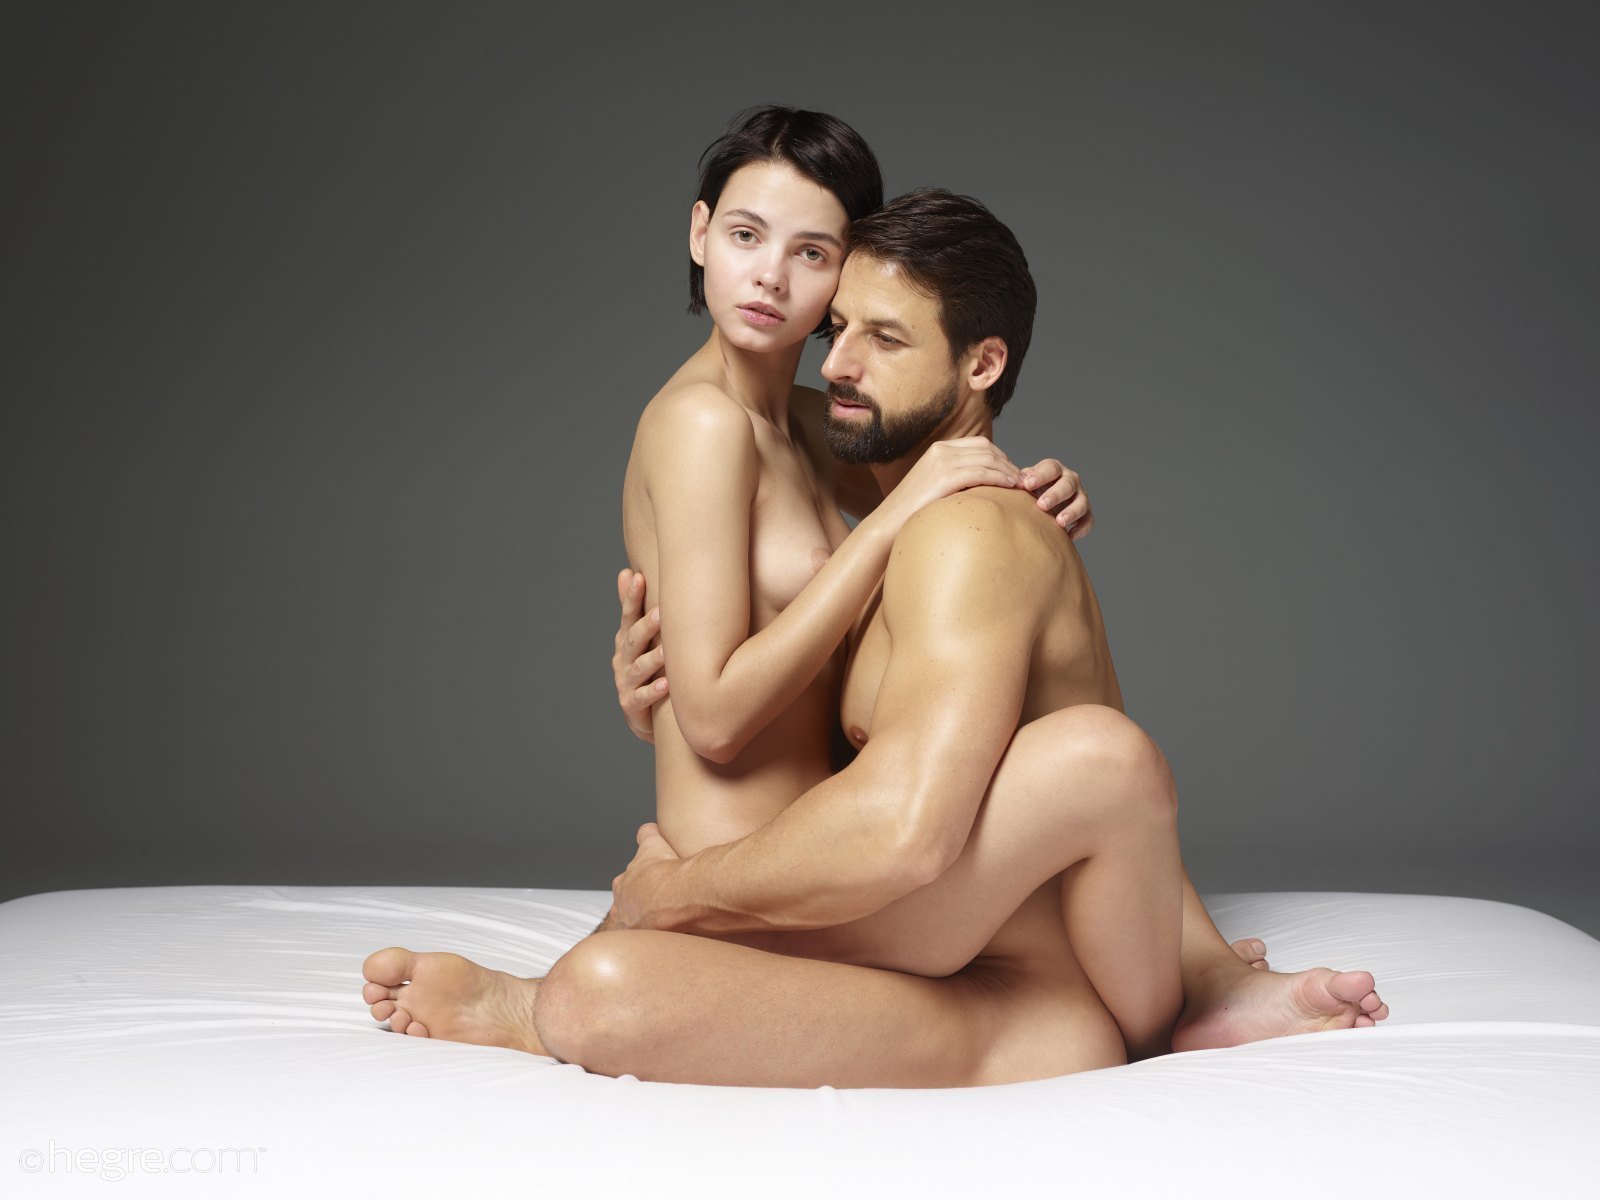 1600px x 1200px - Couples sex photography â¤ï¸ Best adult photos at cums.gallery